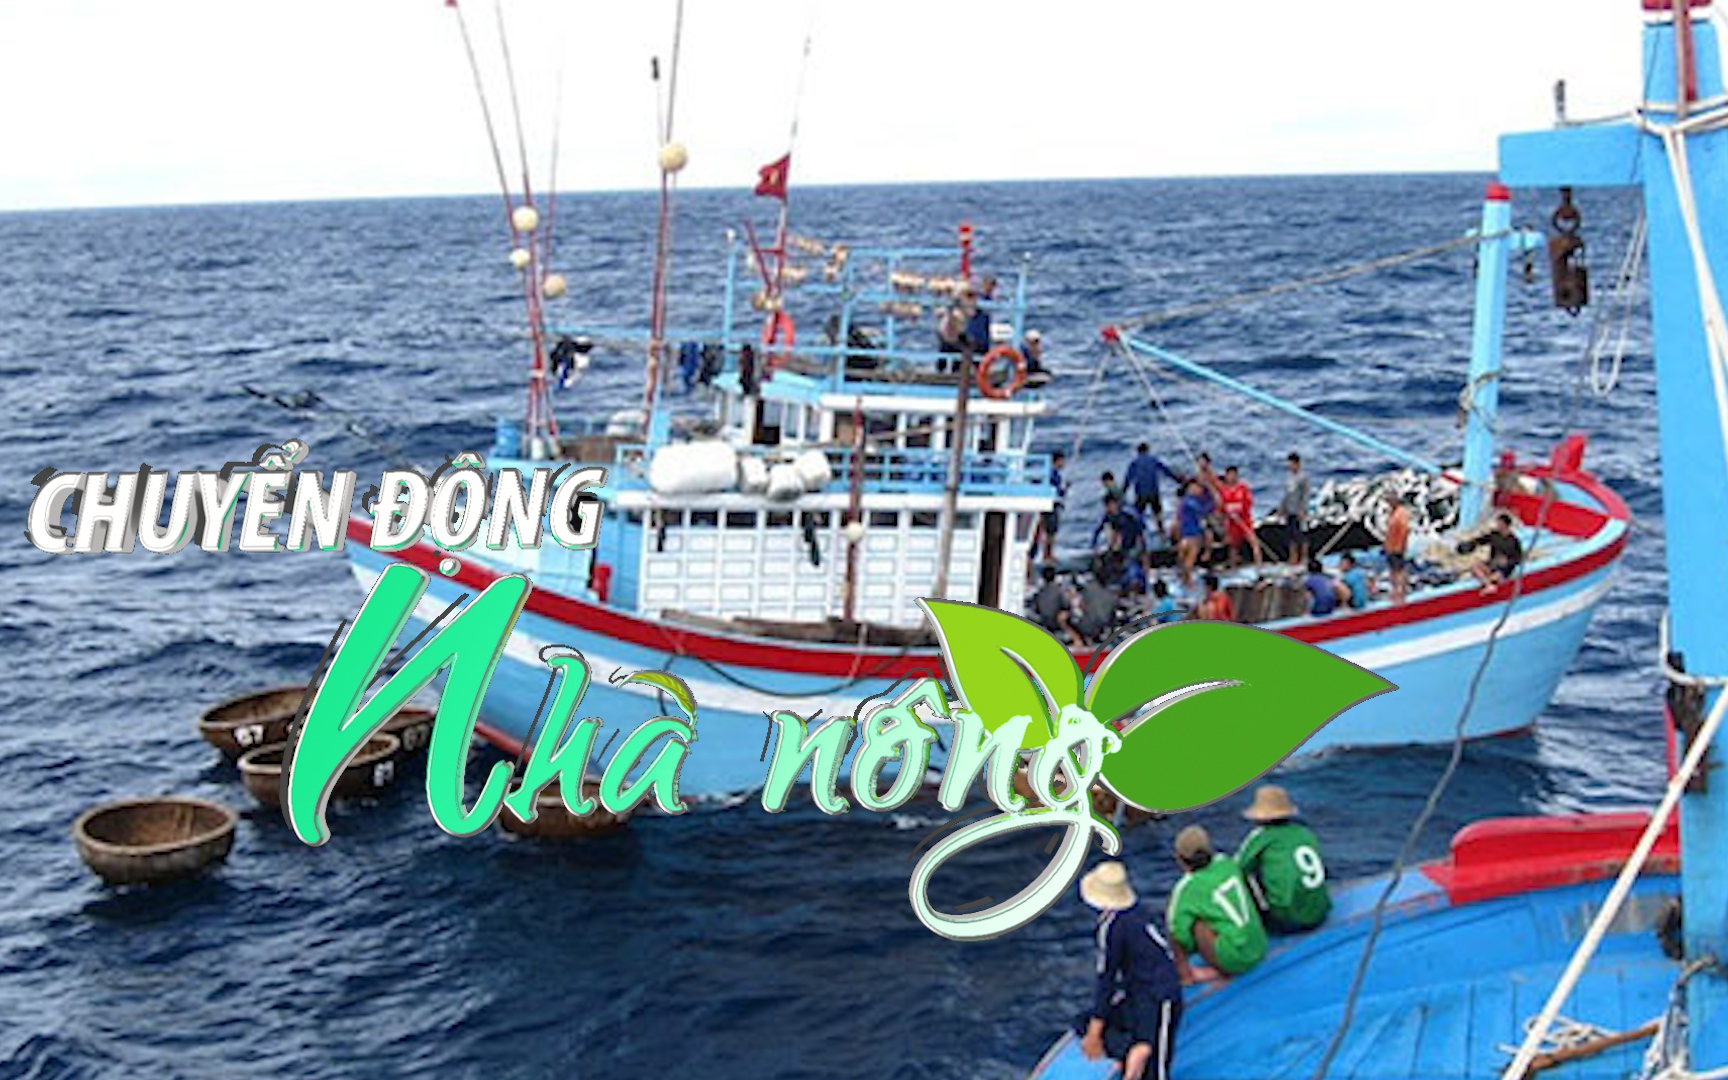 Chuyển động Nhà nông 6/5: Hội Nghề cá Việt Nam phản đối Trung Quốc đơn phương cấm đánh cá ở Biển Đông